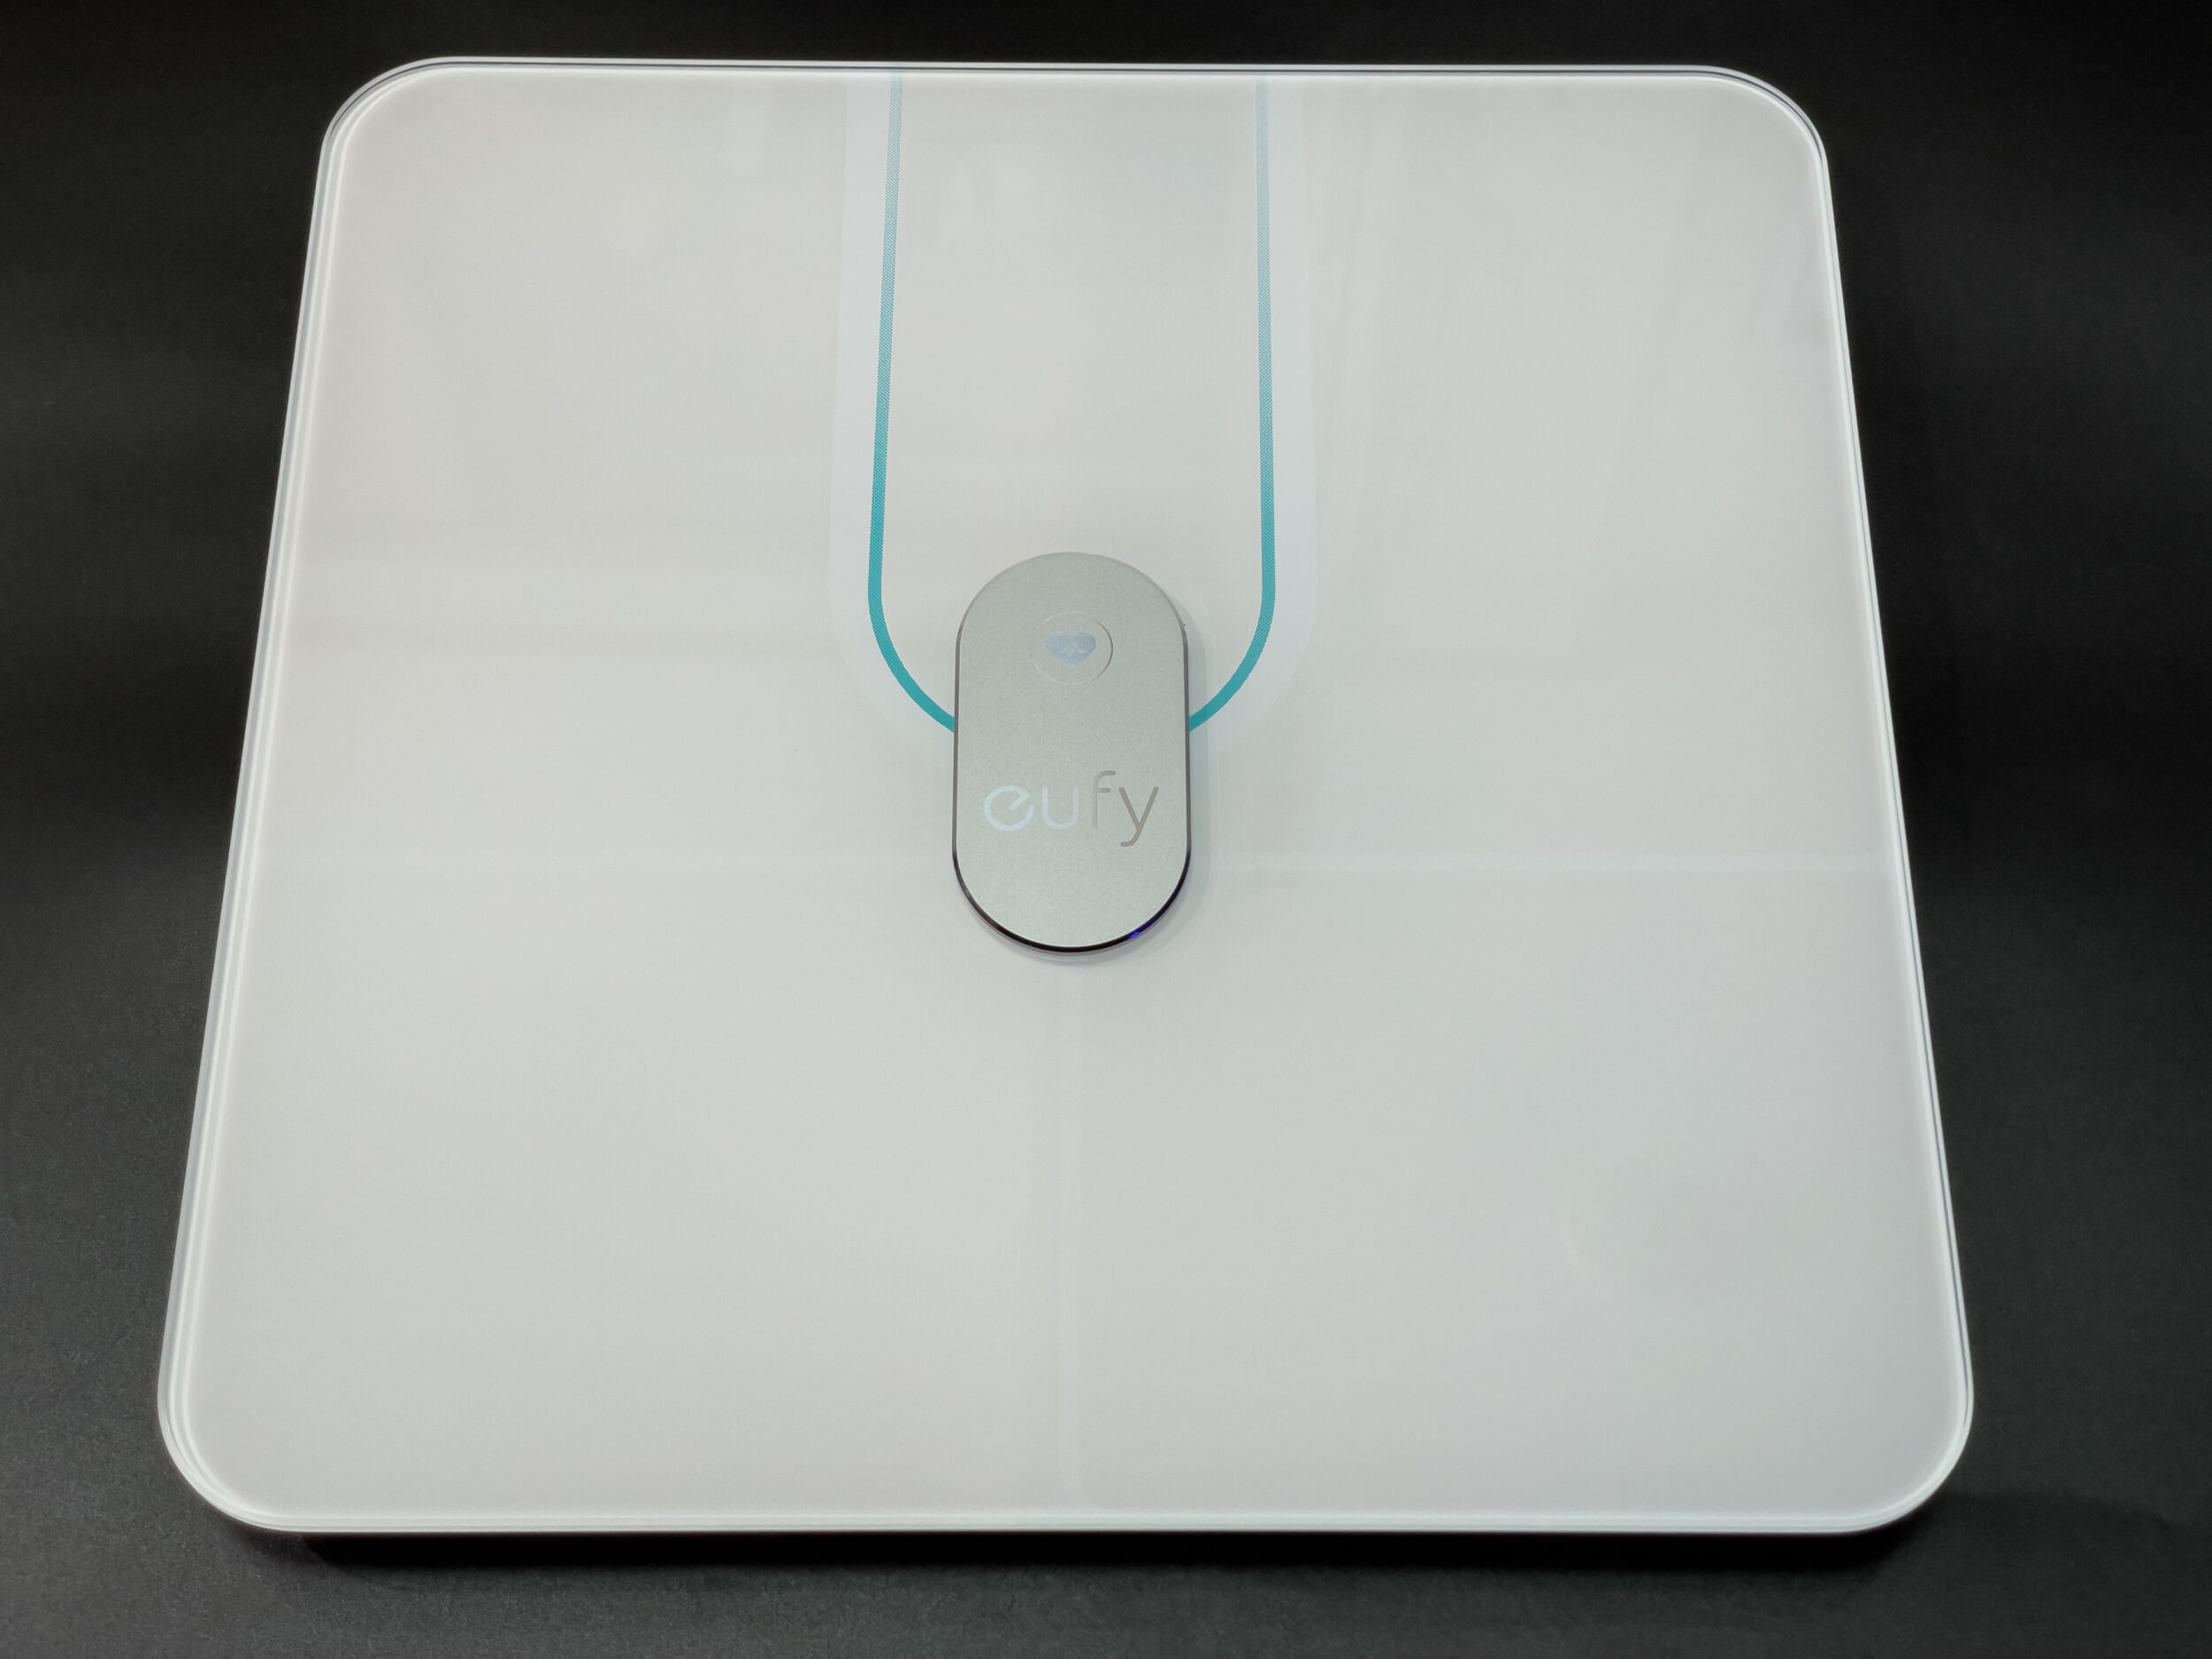 【ズボラ】ANKERの体重計 Eufy Smart Scale P2 Proを1年使用してみた！